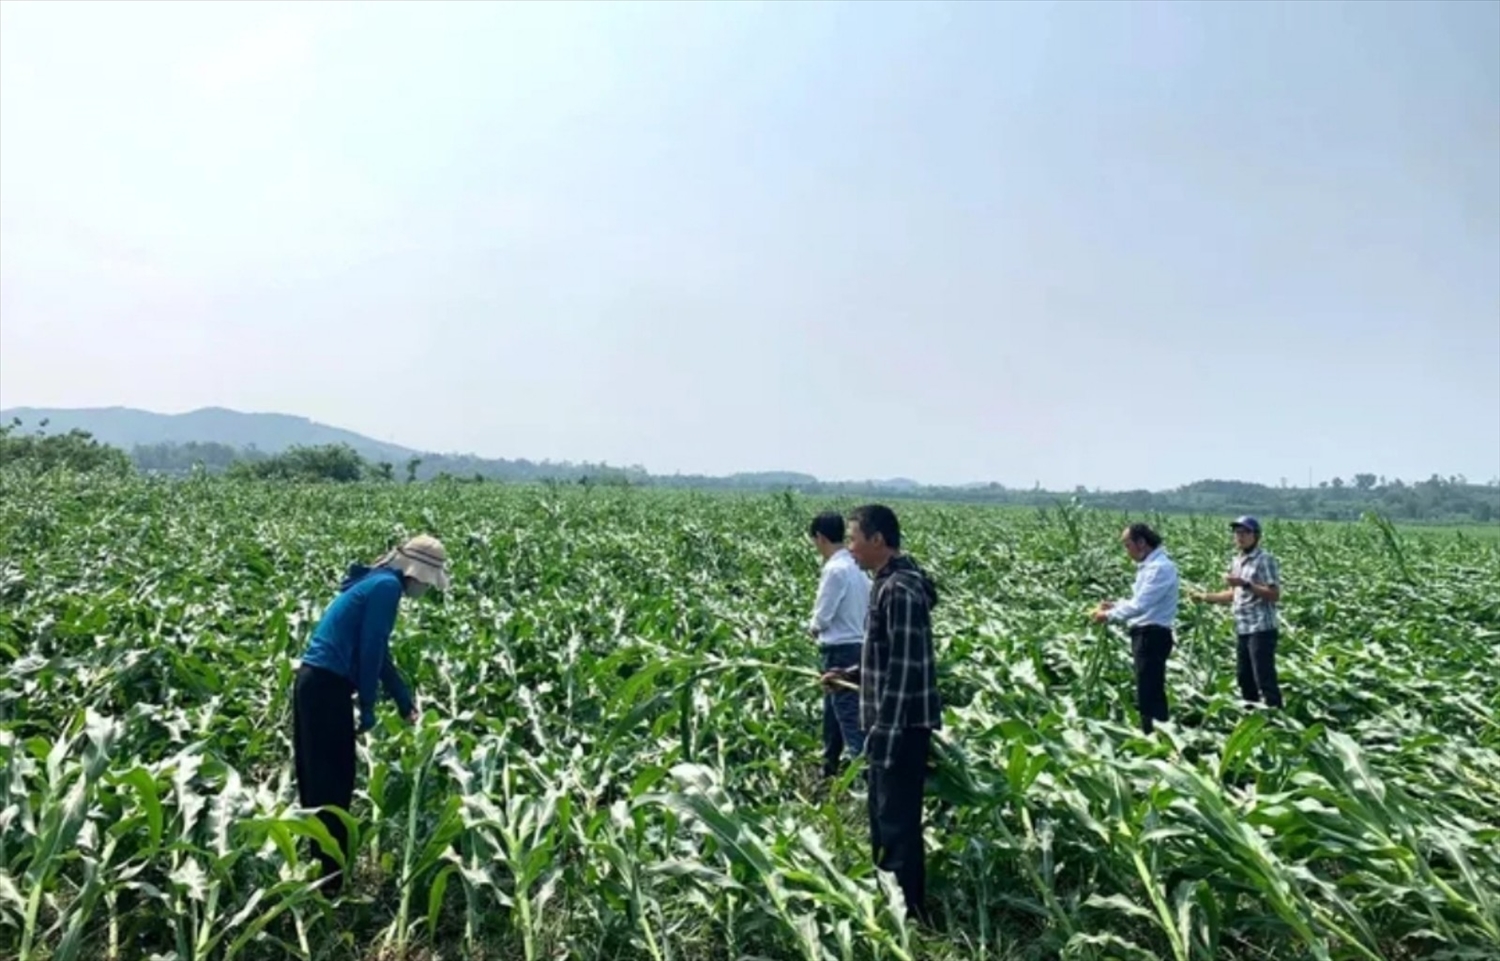 Tổng diện tích nông nghiệp huyện Anh Sơn bị ảnh hưởng lớn, với khoảng 150 hecta lúa bị phá hủy, 720 hecta ngô và rau màu bị thiệt hại, cùng với diện tích rừng bị tổn thất khoảng 805,5 hecta.